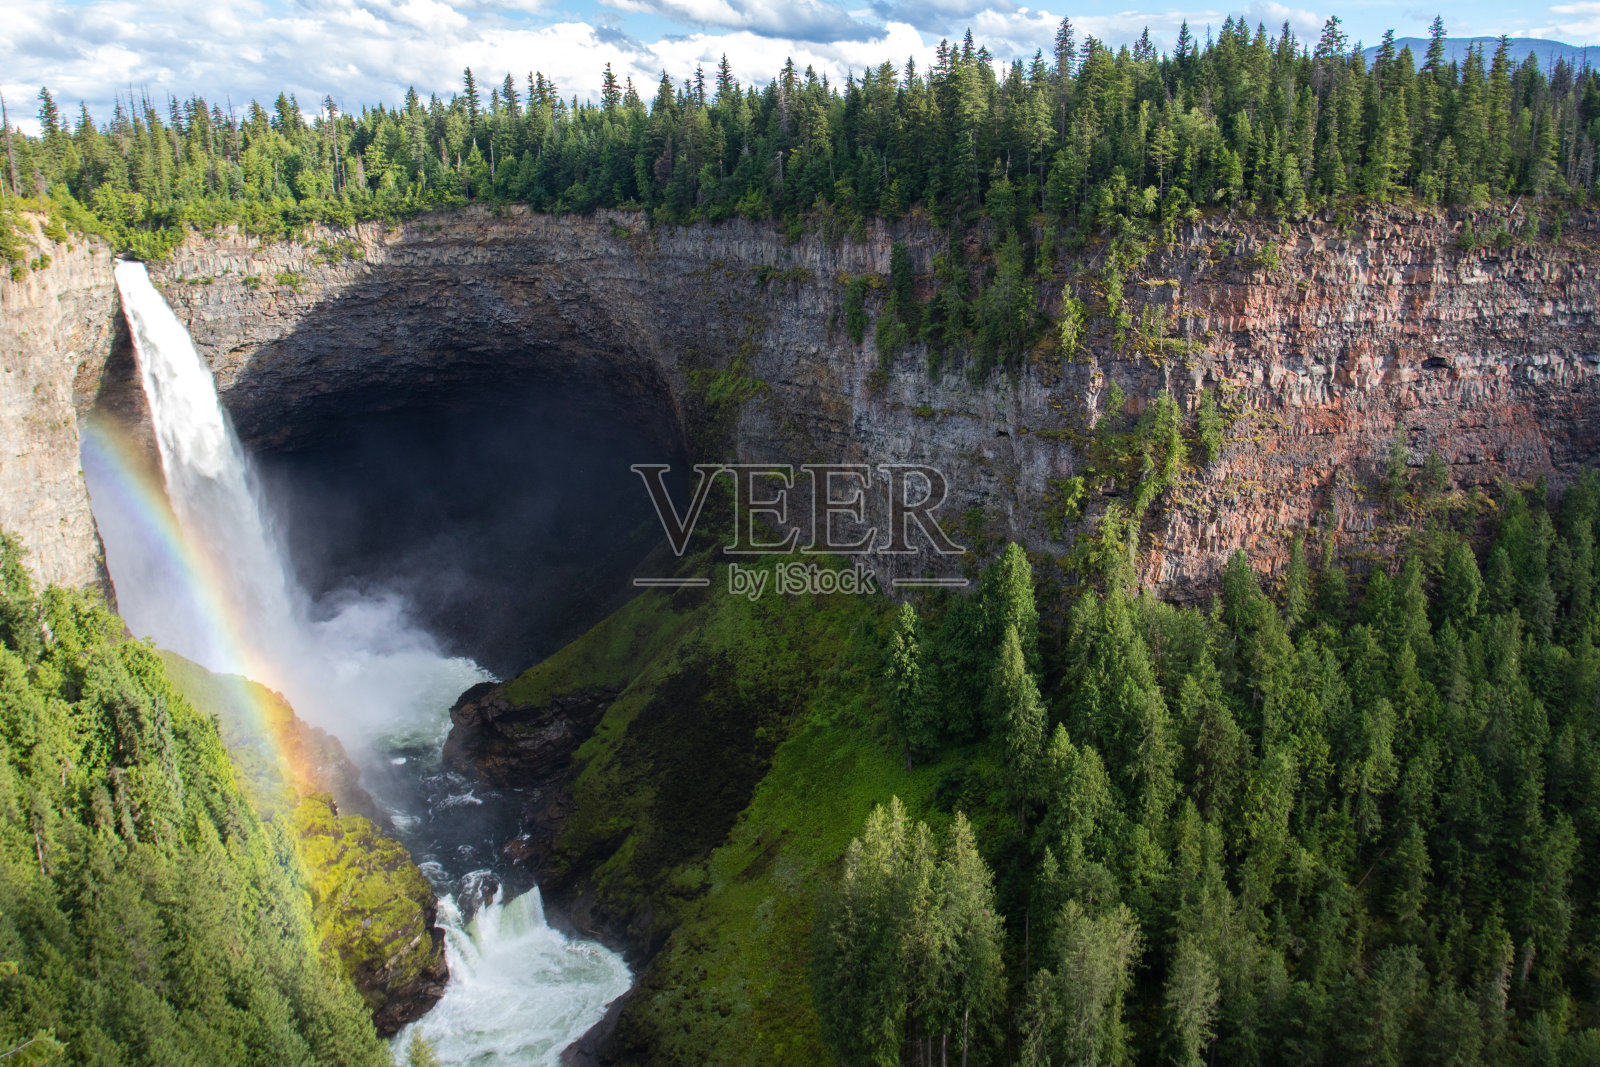 赫尔麦肯瀑布位于莫特尔河上，高141米。照片摄影图片